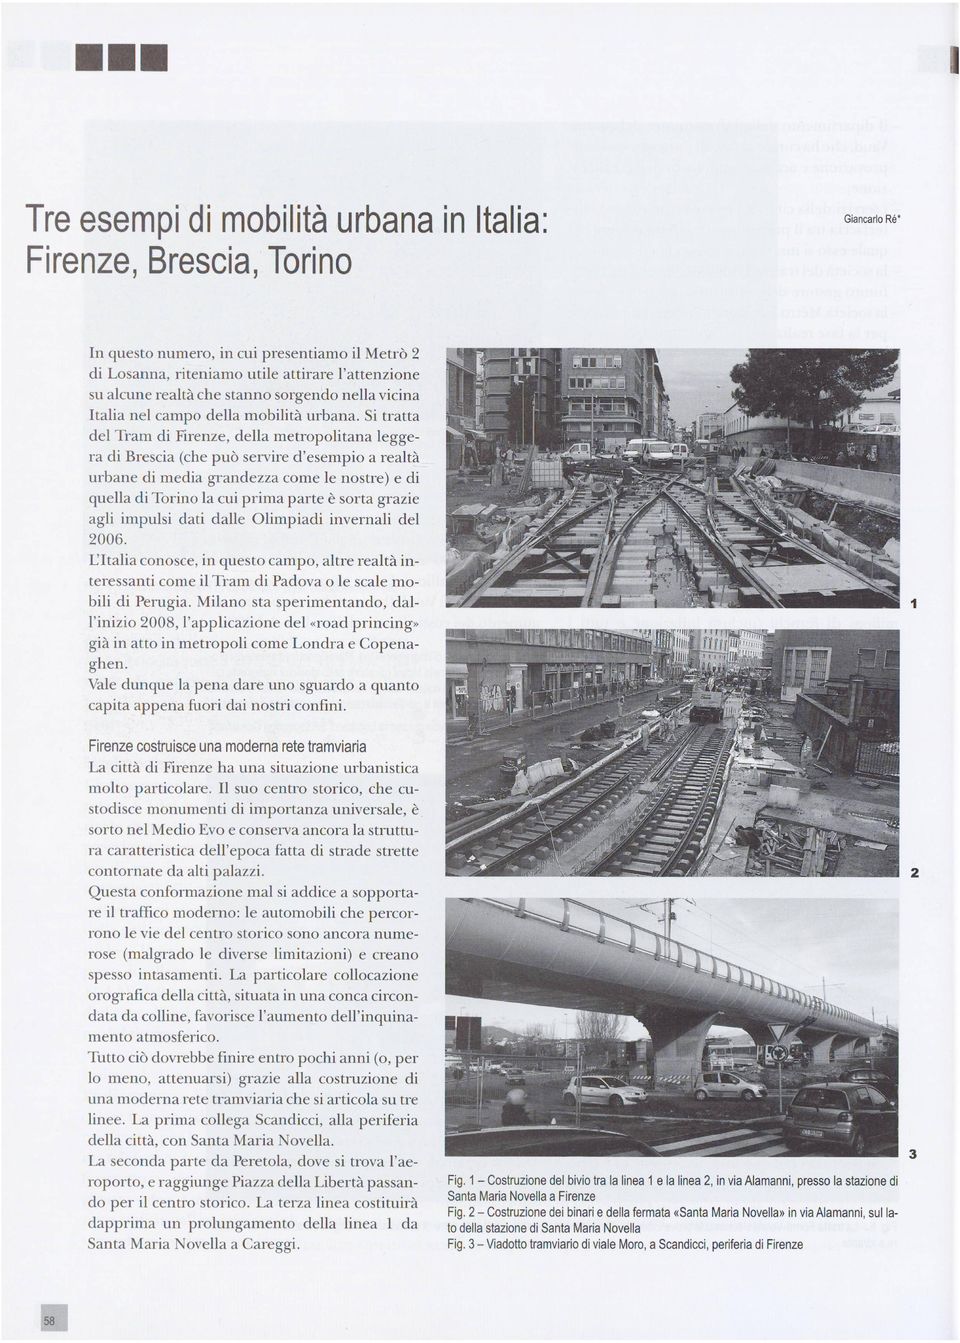 Si tratta del Tram di Firenze, della metropolitana legge ra di Brescia (che può servire d'esempio a realtà urbane di media grandezza come le nostre) e di quella di Torino la cui prima parte è sorta